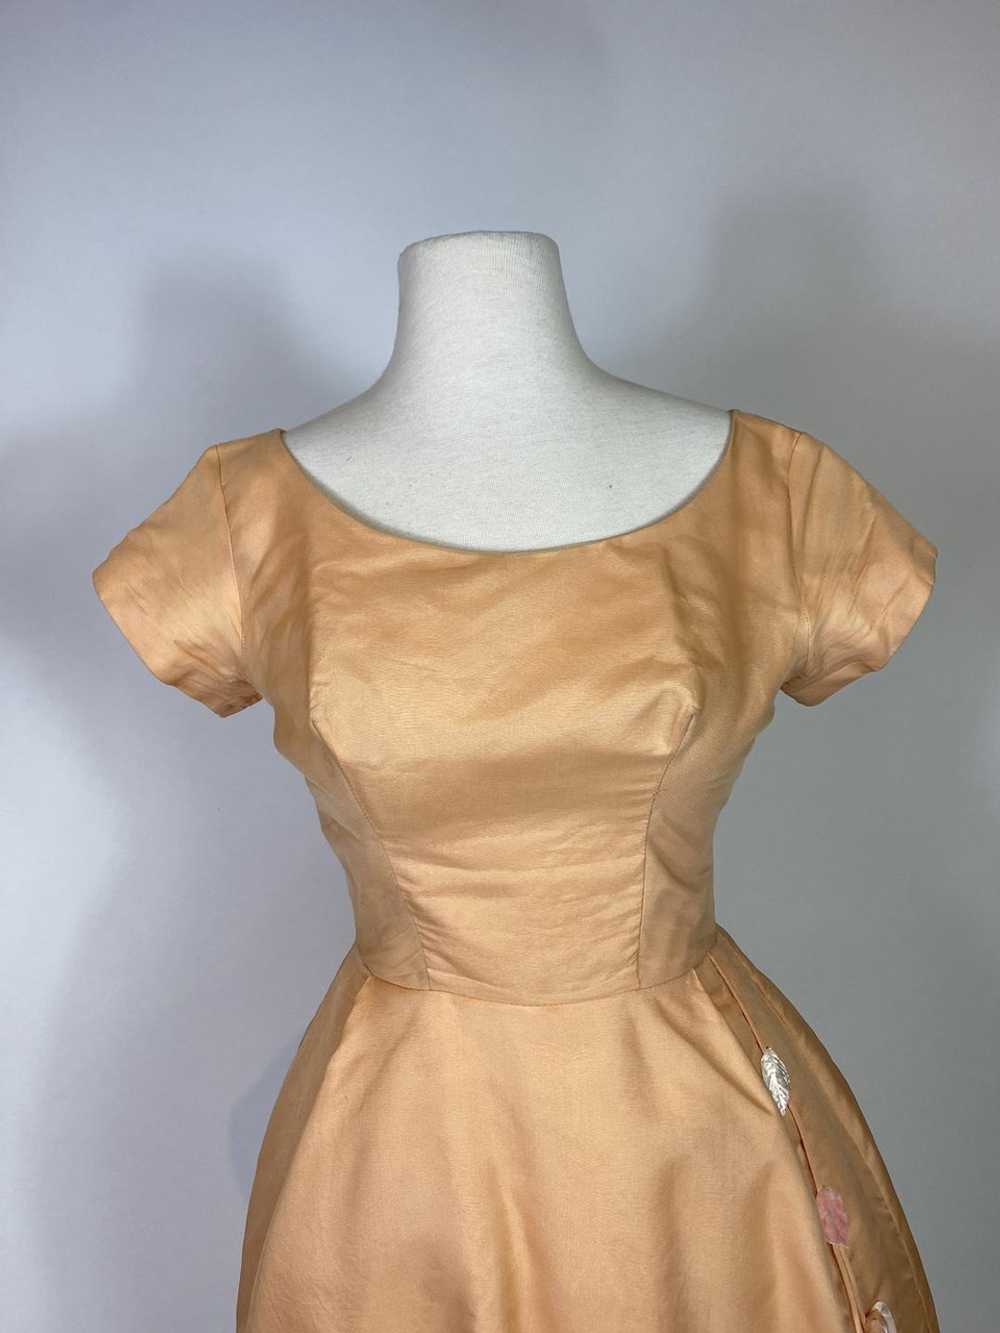 1950s Peach Floral Applique Dress - image 2